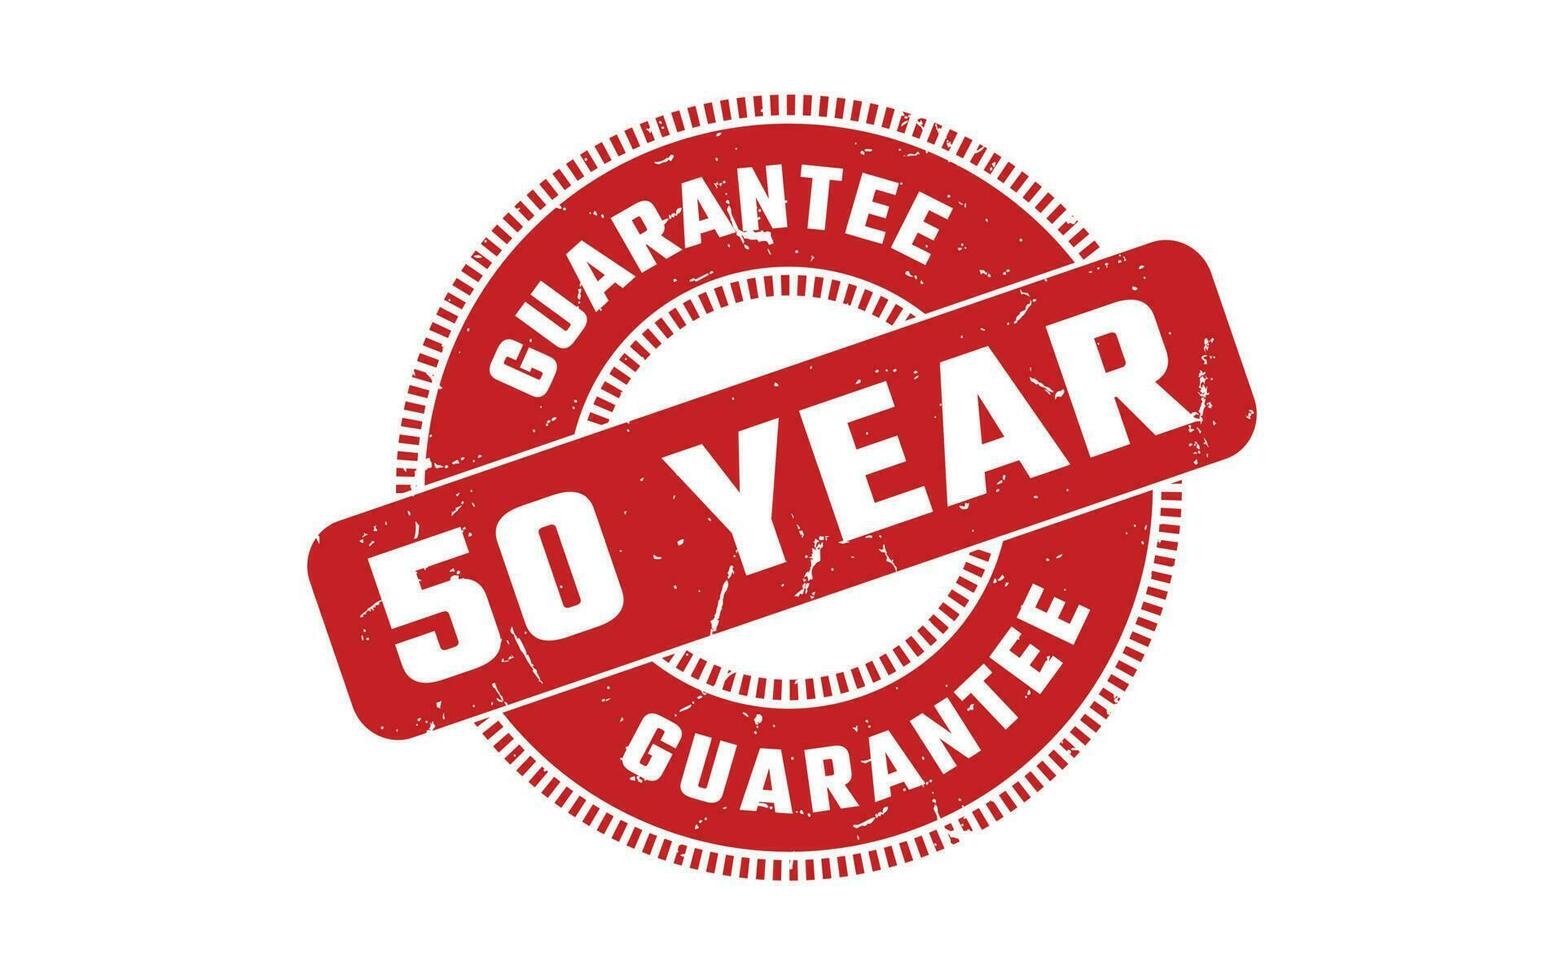 50 Jahr Garantie Gummi Briefmarke vektor